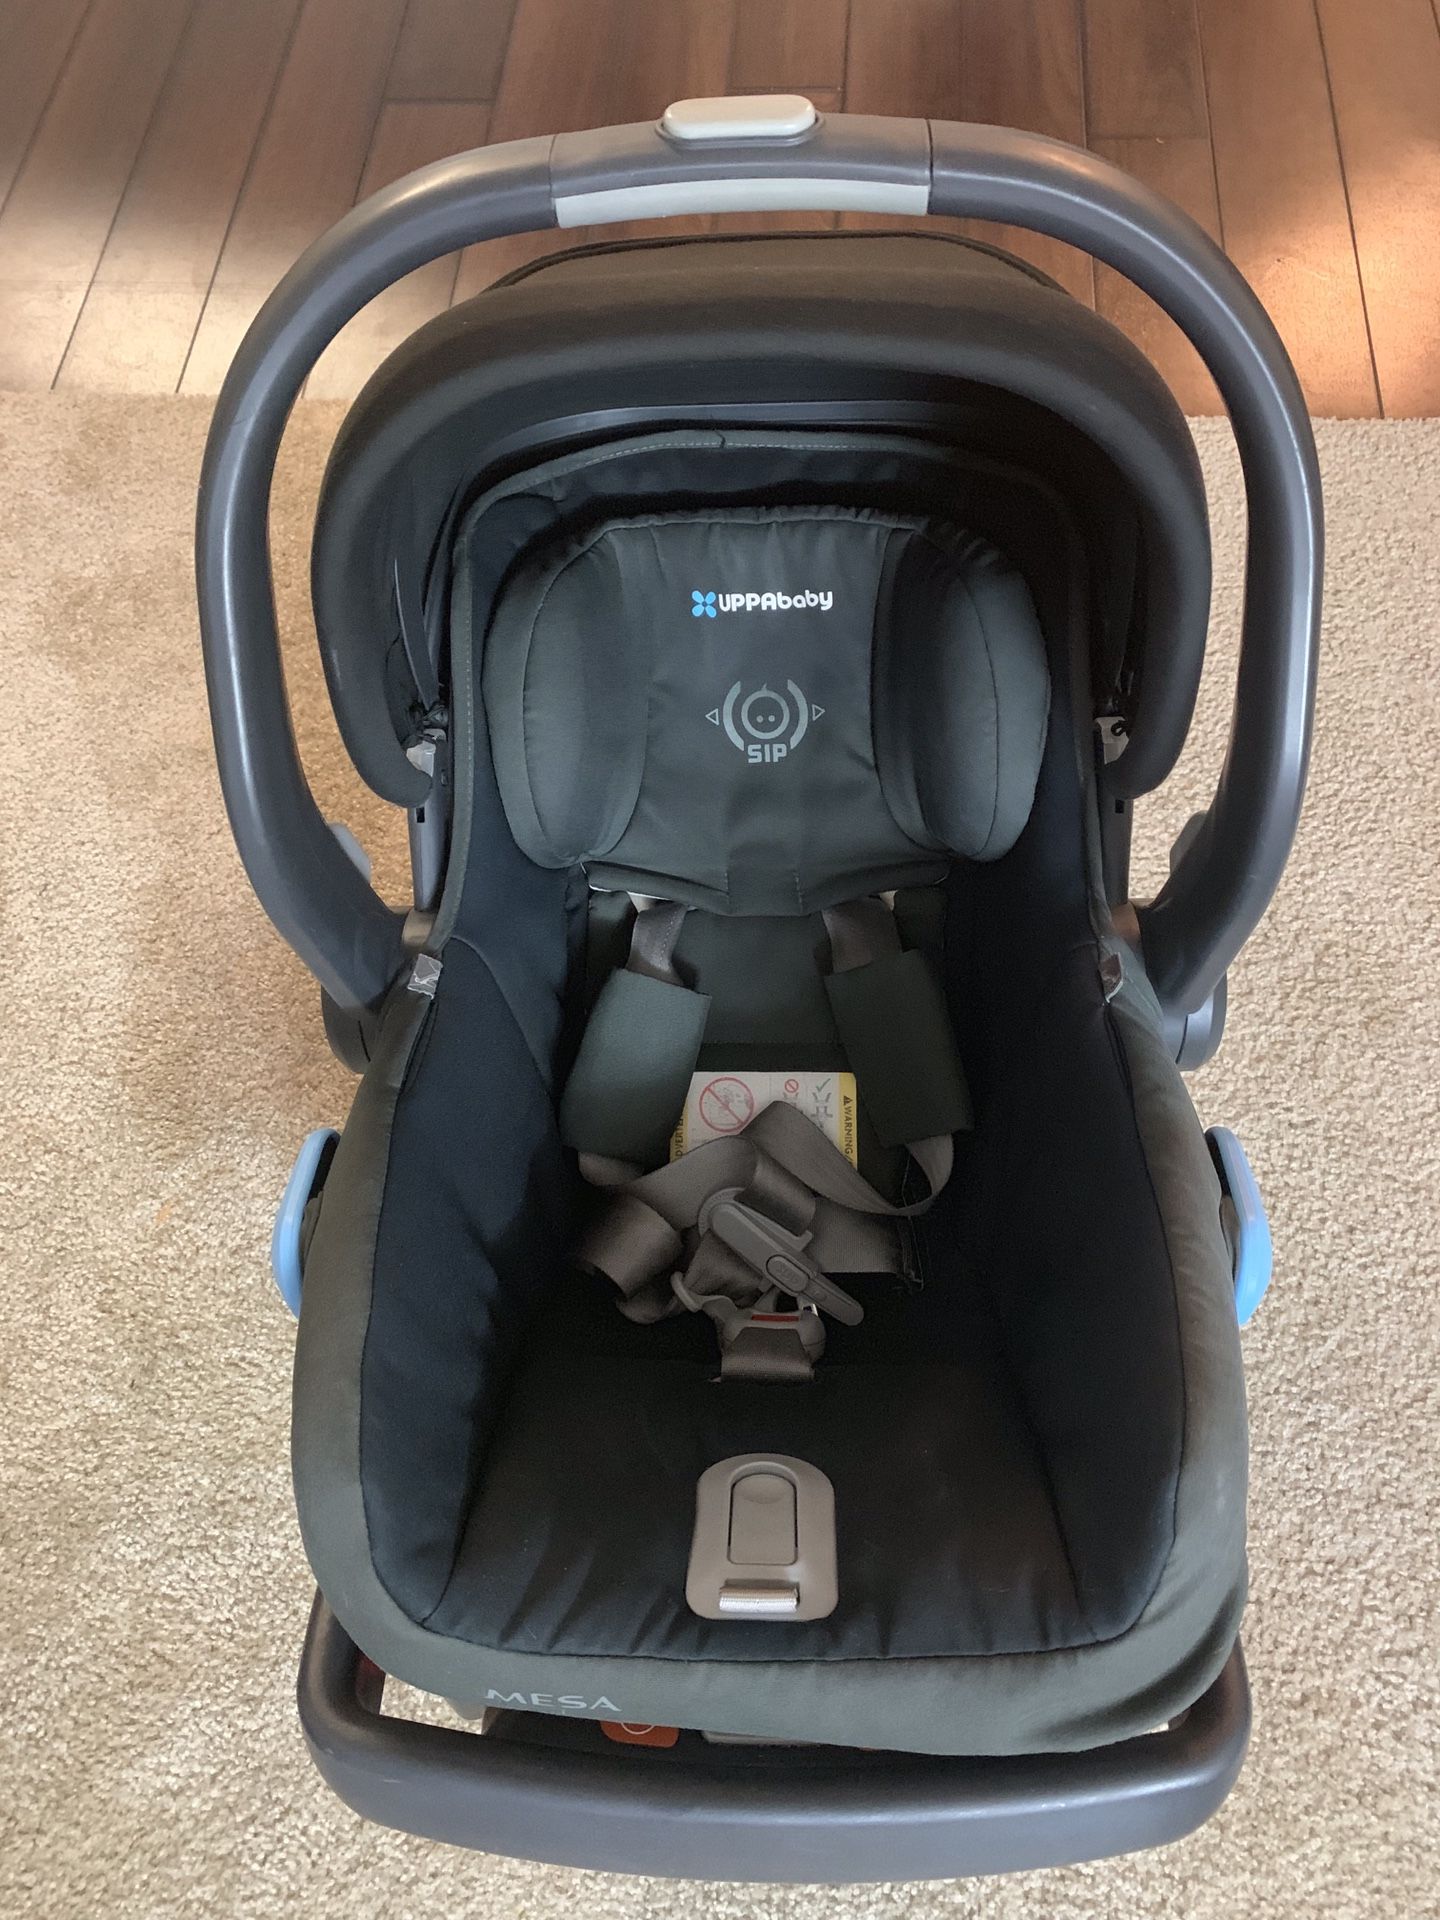 Uppa baby MESA car seat with base / uppababy Mesa / Infant car seat